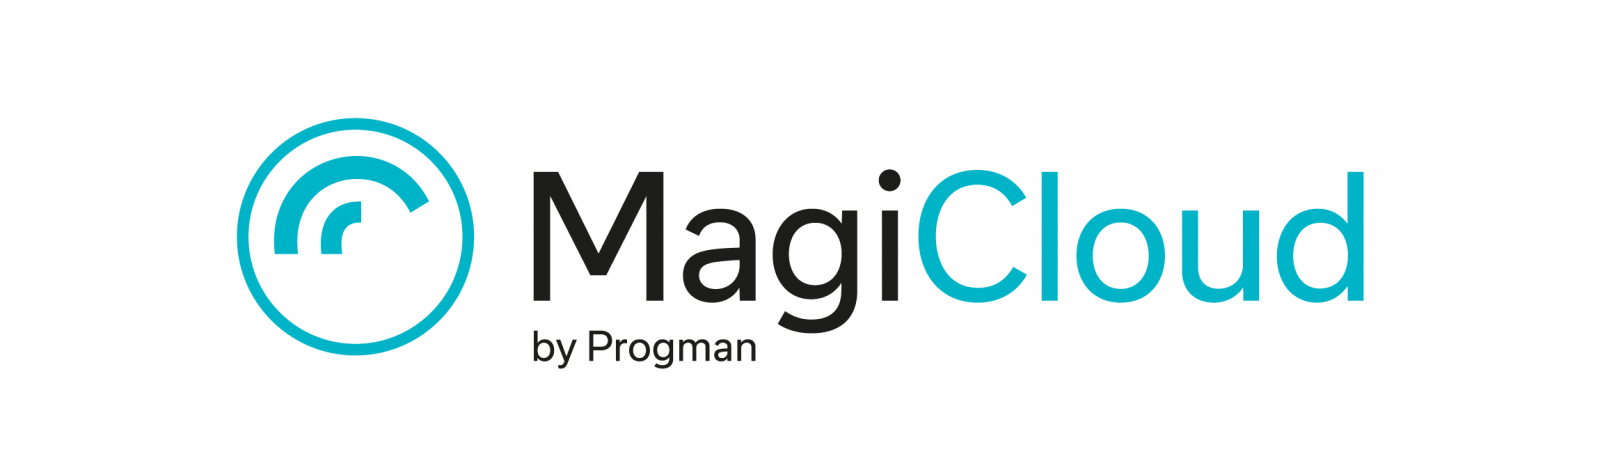 Information Bim Modelinglogo Logo - MagiCloud, Europe's largest online Building Information Modeling ...